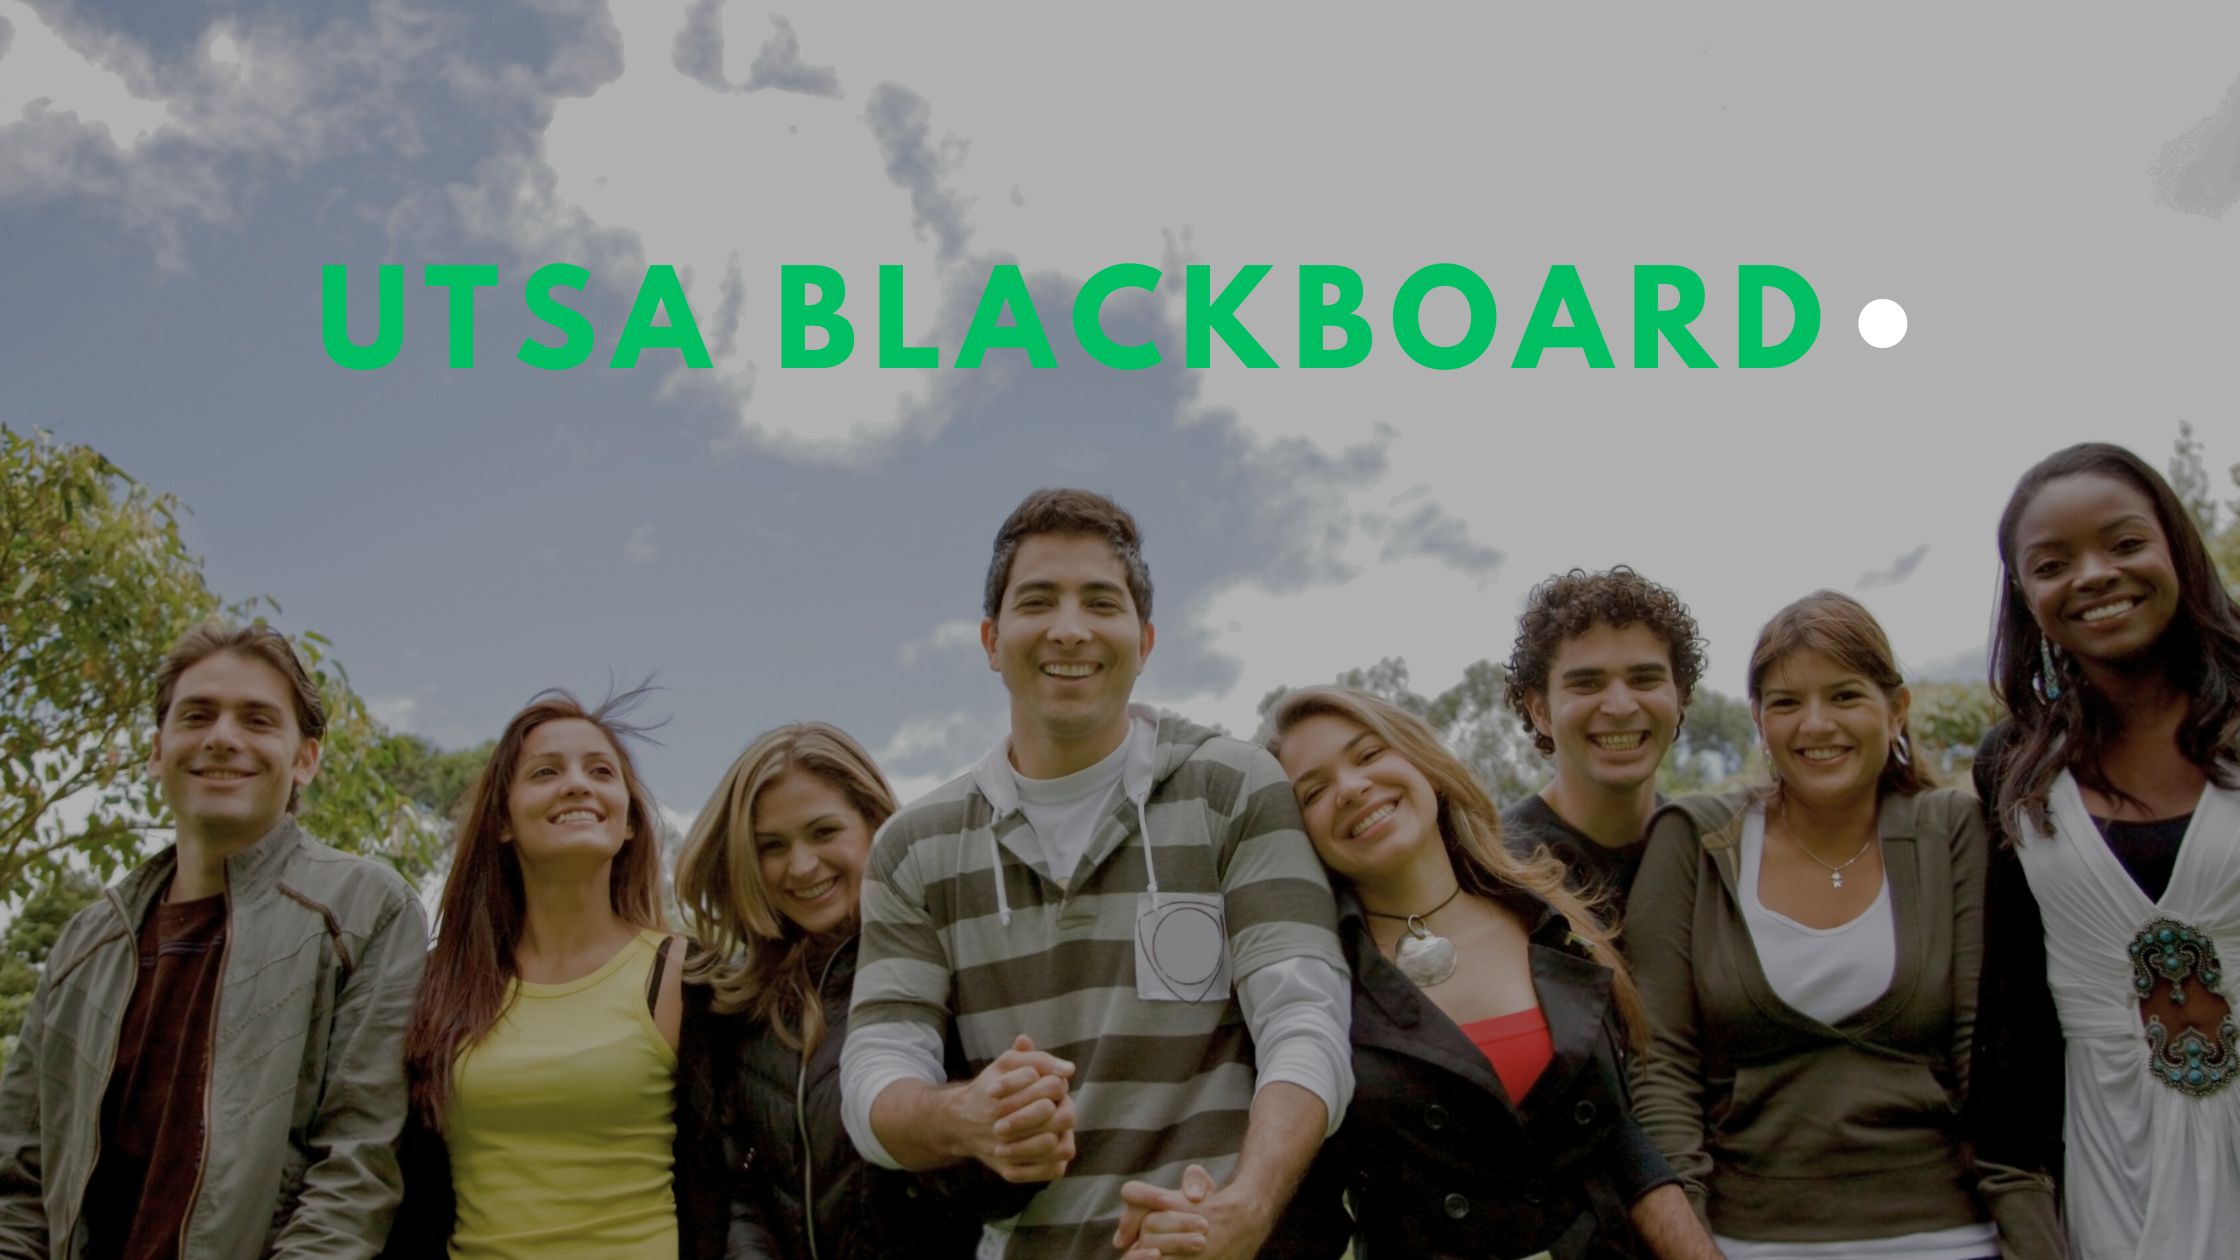 UTSA Blackboard